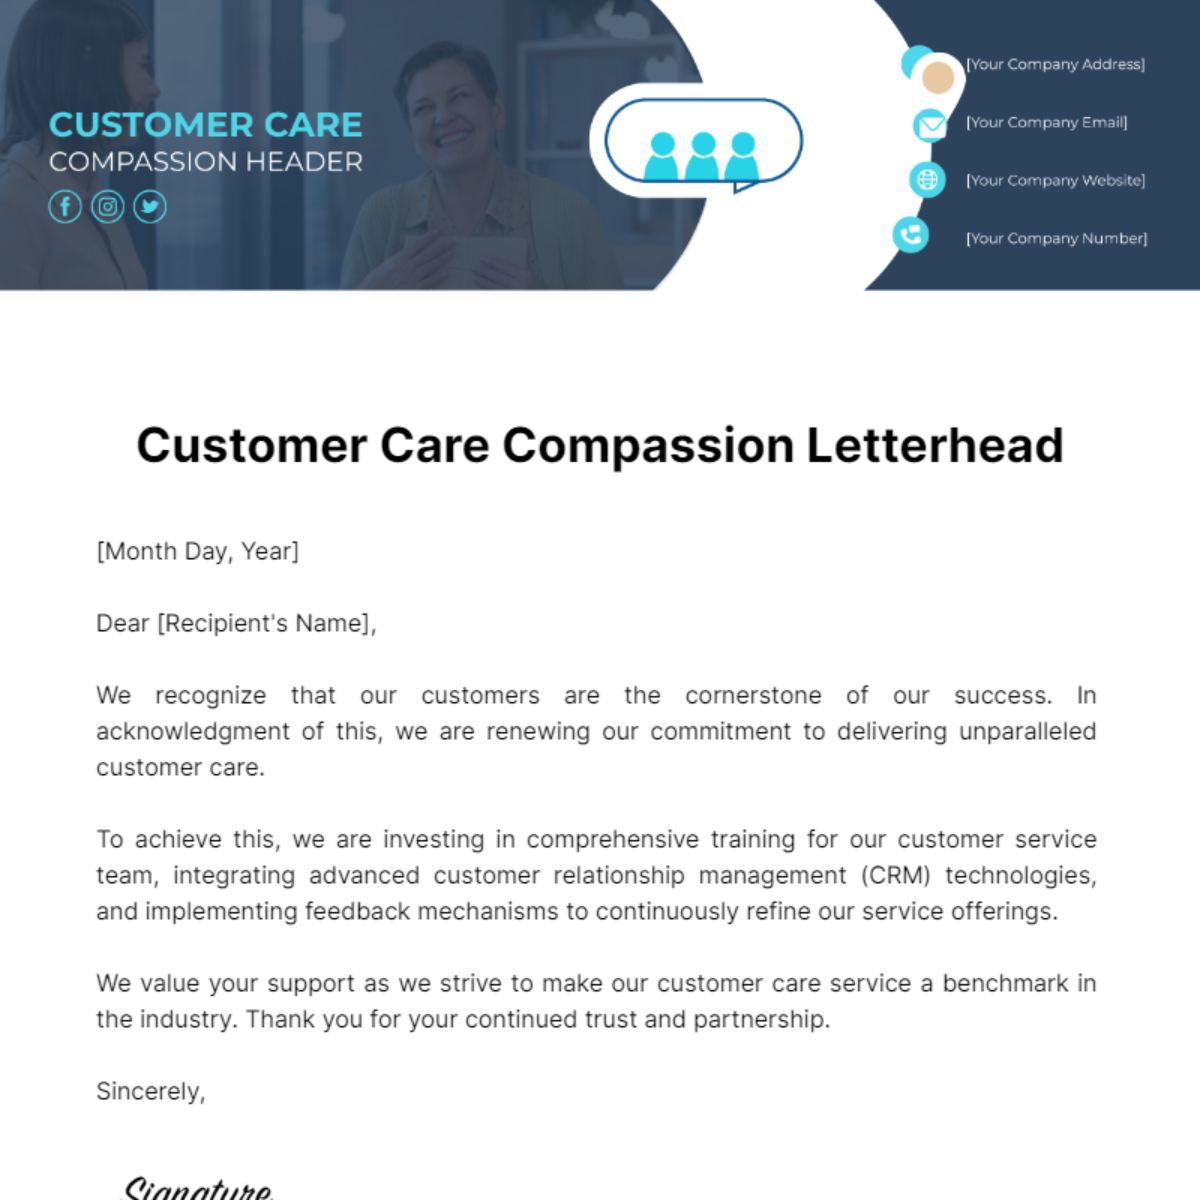 Customer Care Compassion Letterhead Template